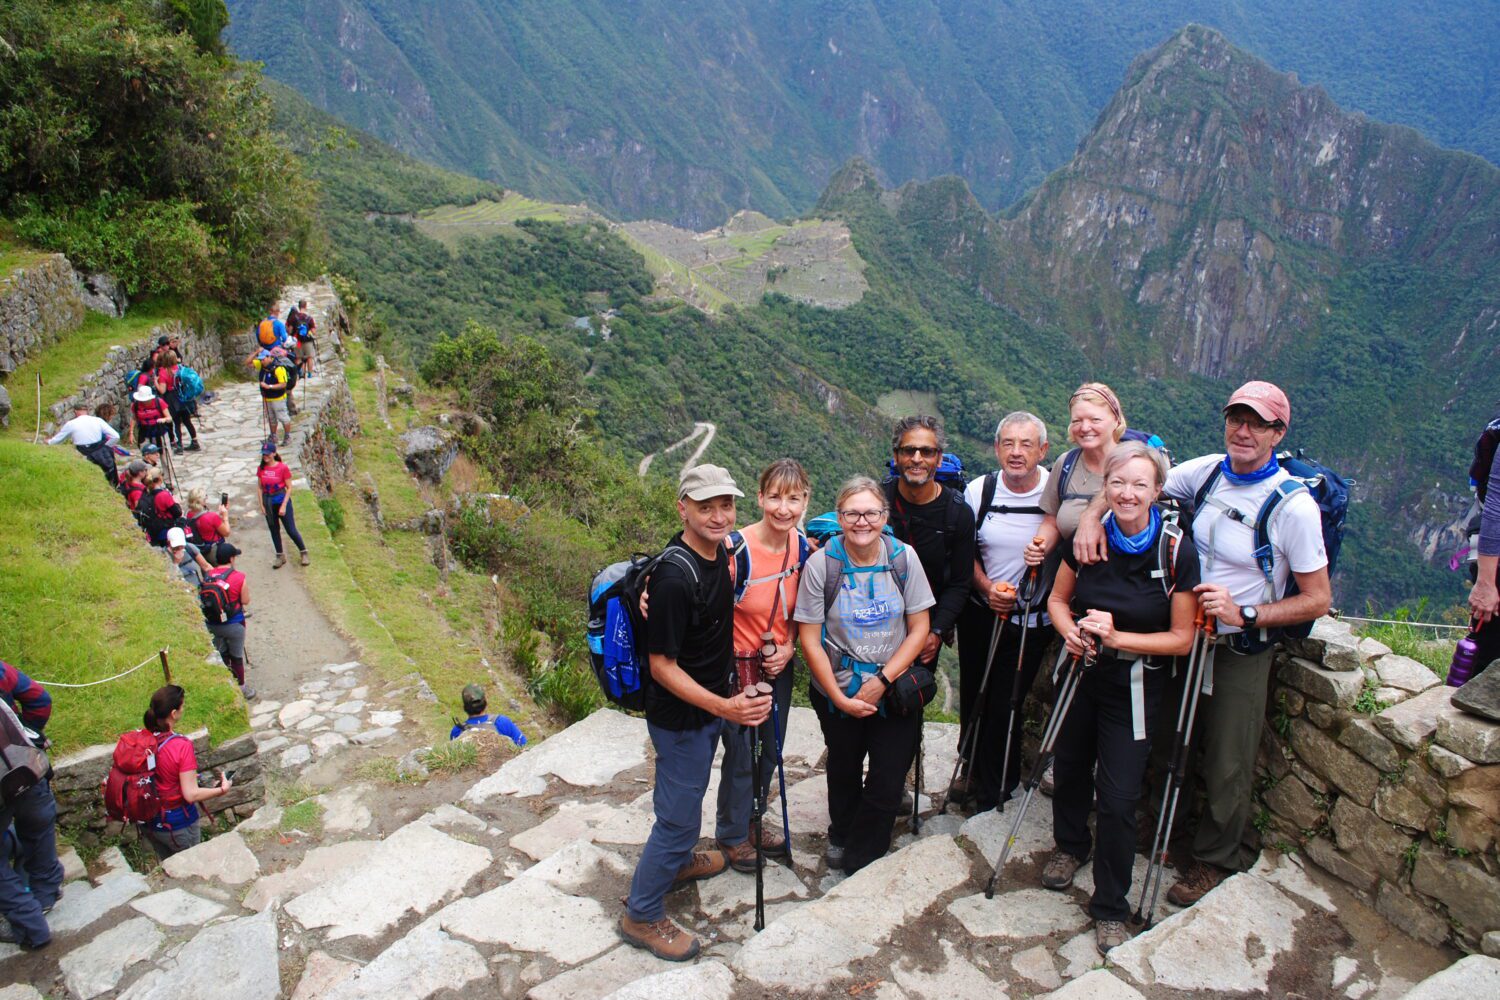 Inca Trail to Machupicchu 4 days